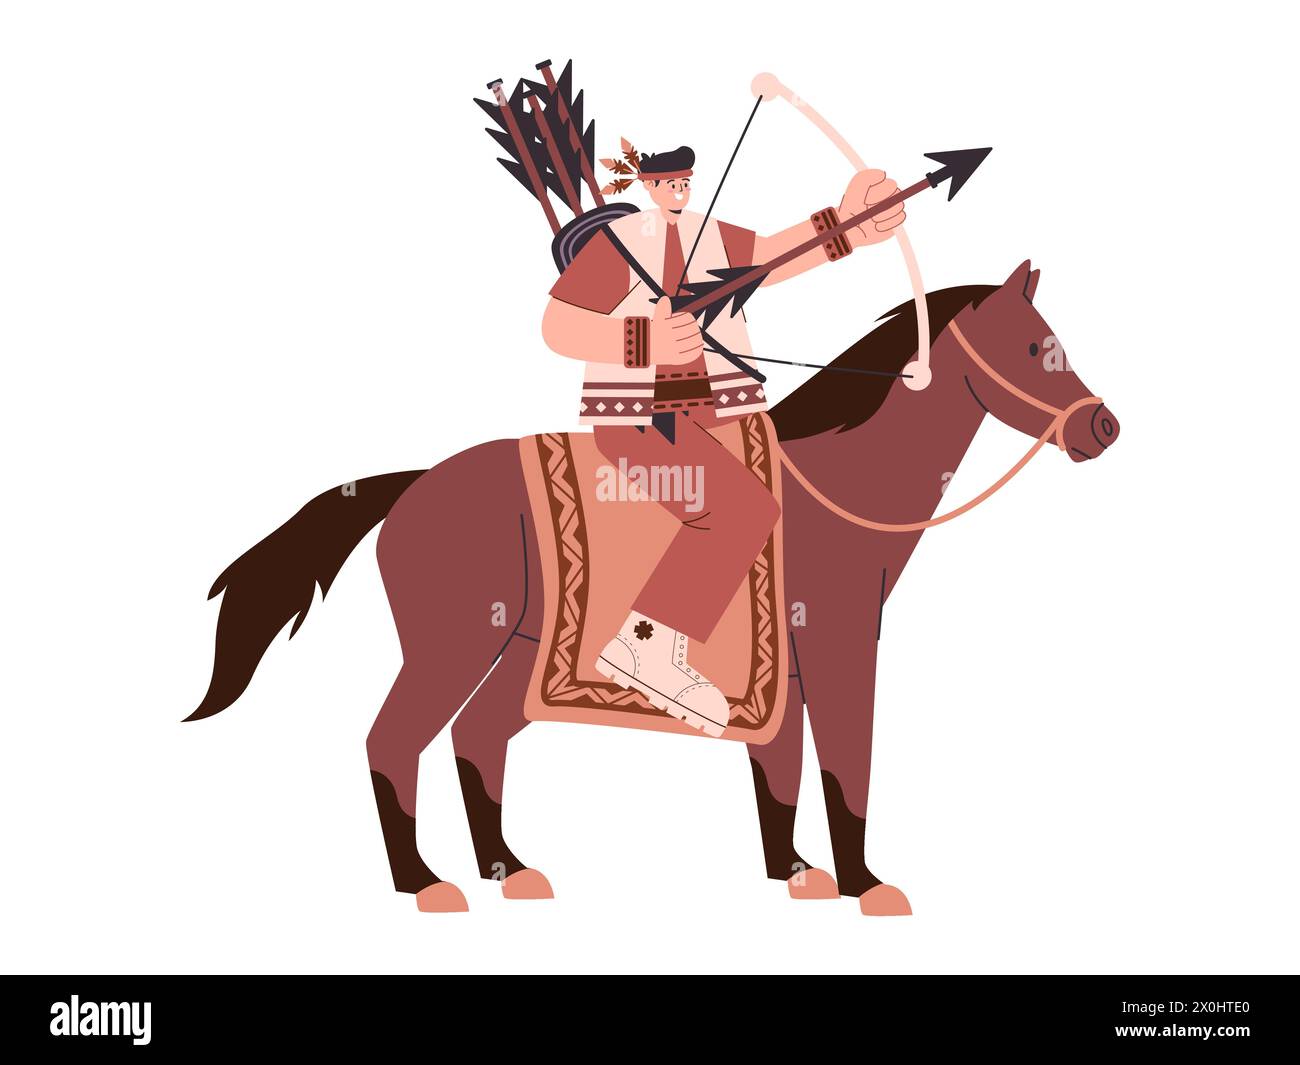 Illustrazione della tribù nativa americana con il tiro con l'arco e cavallo di colore marrone Illustrazione Vettoriale